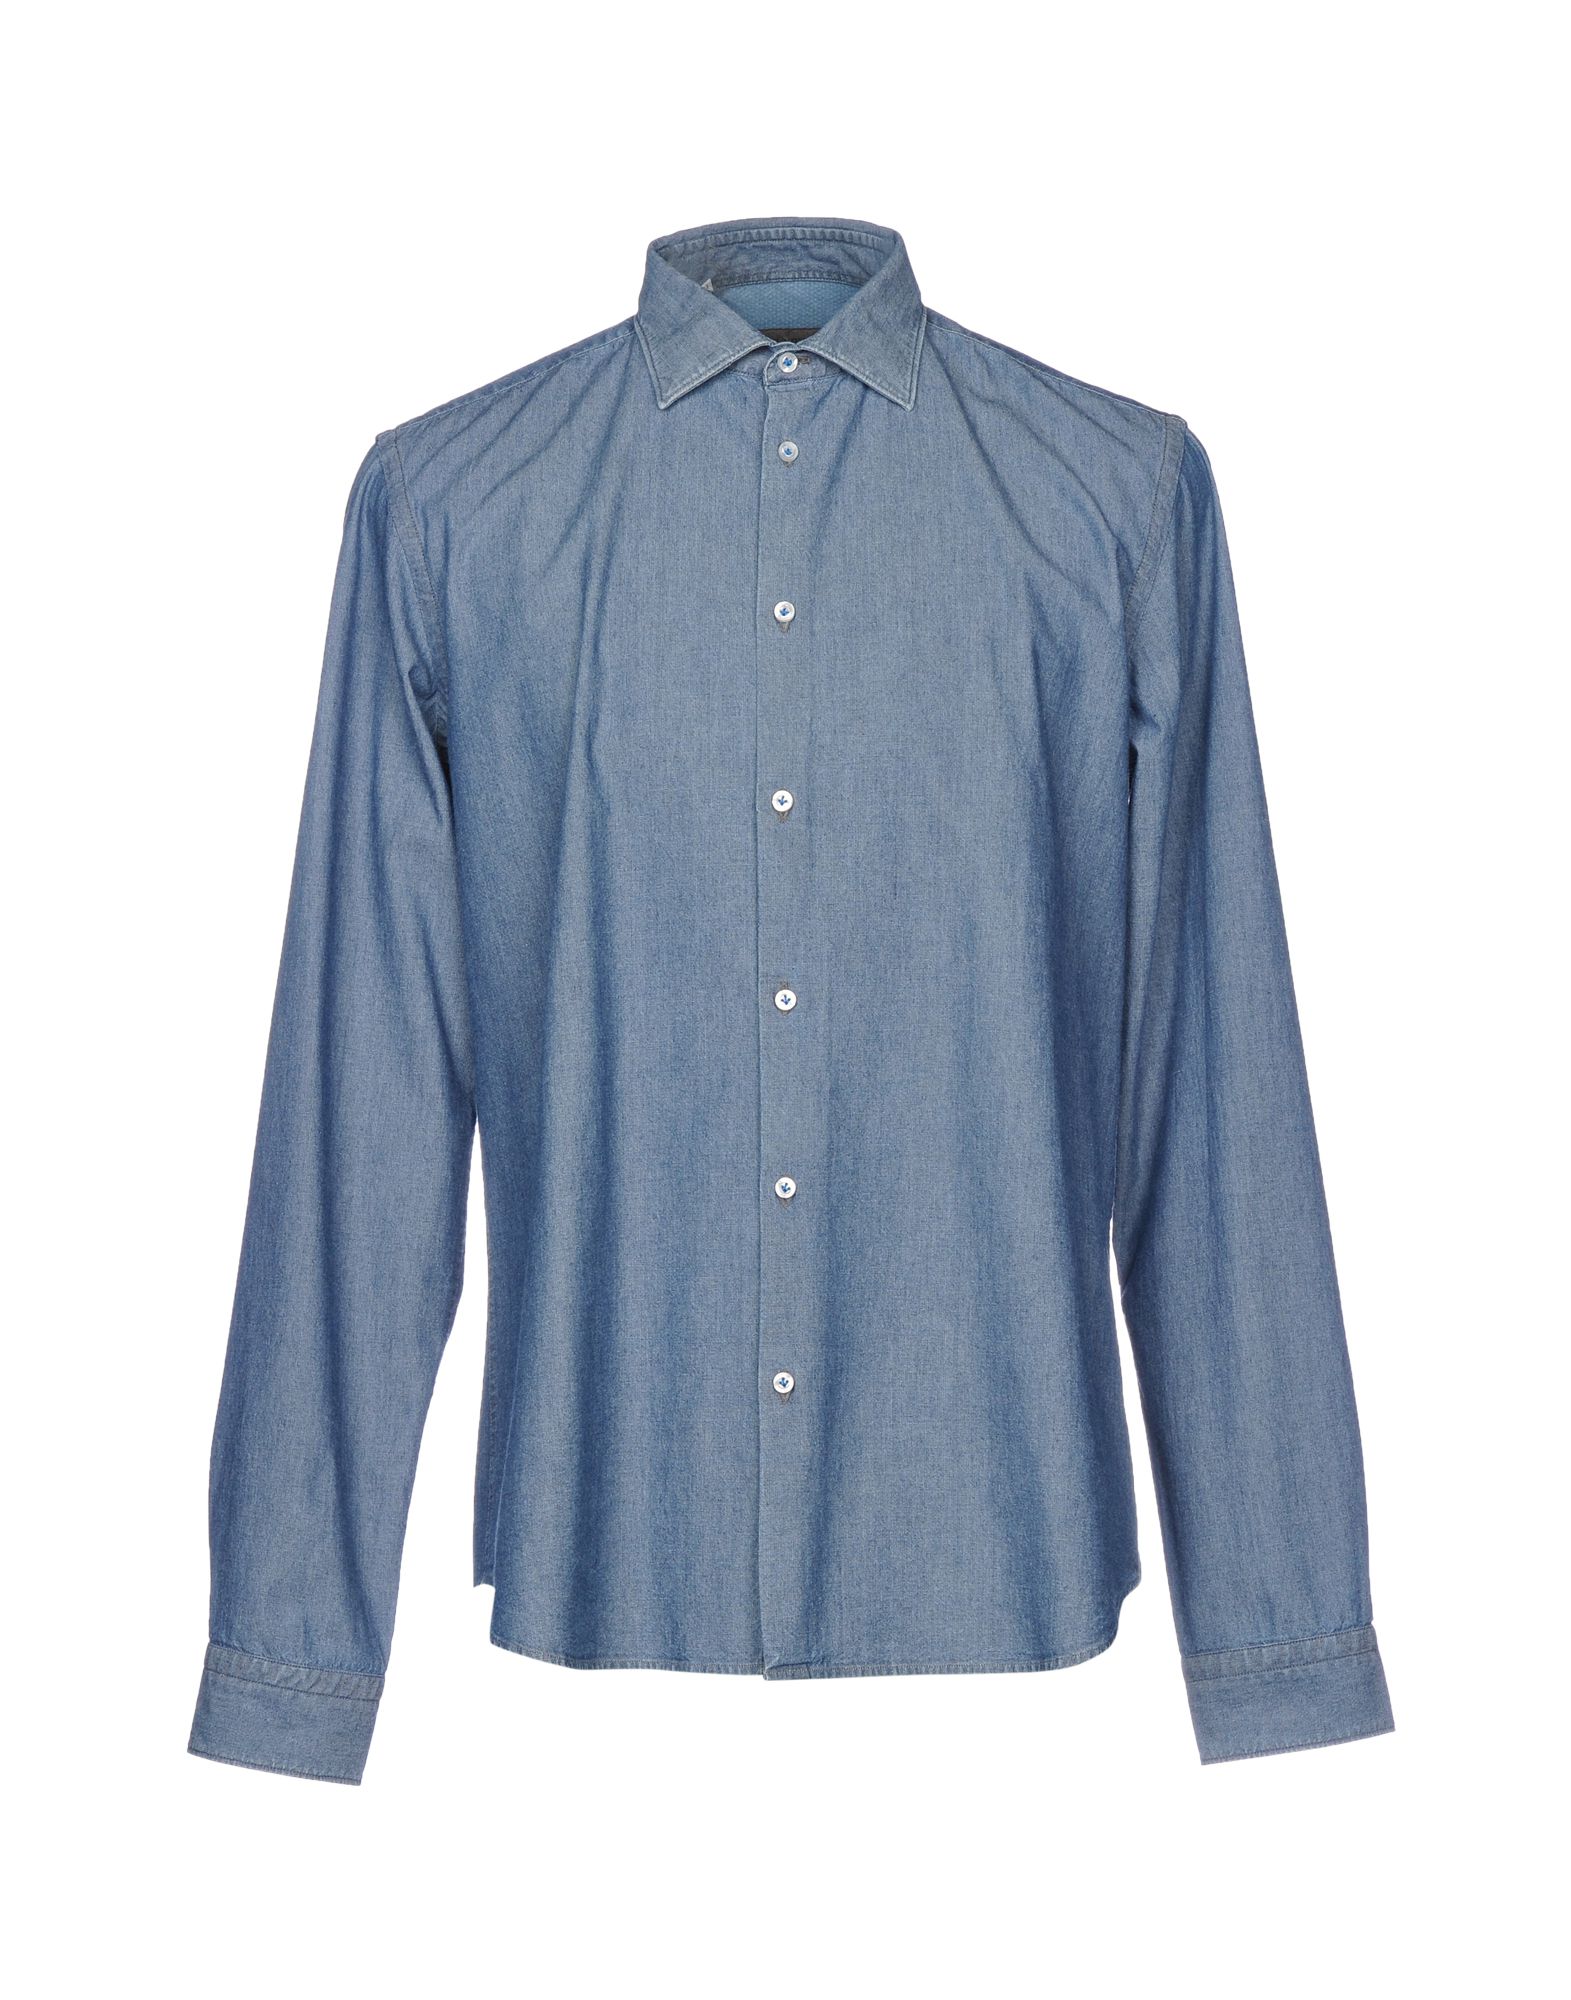 《送料無料》MANUEL RITZ メンズ デニムシャツ ブルー 43 コットン 100%